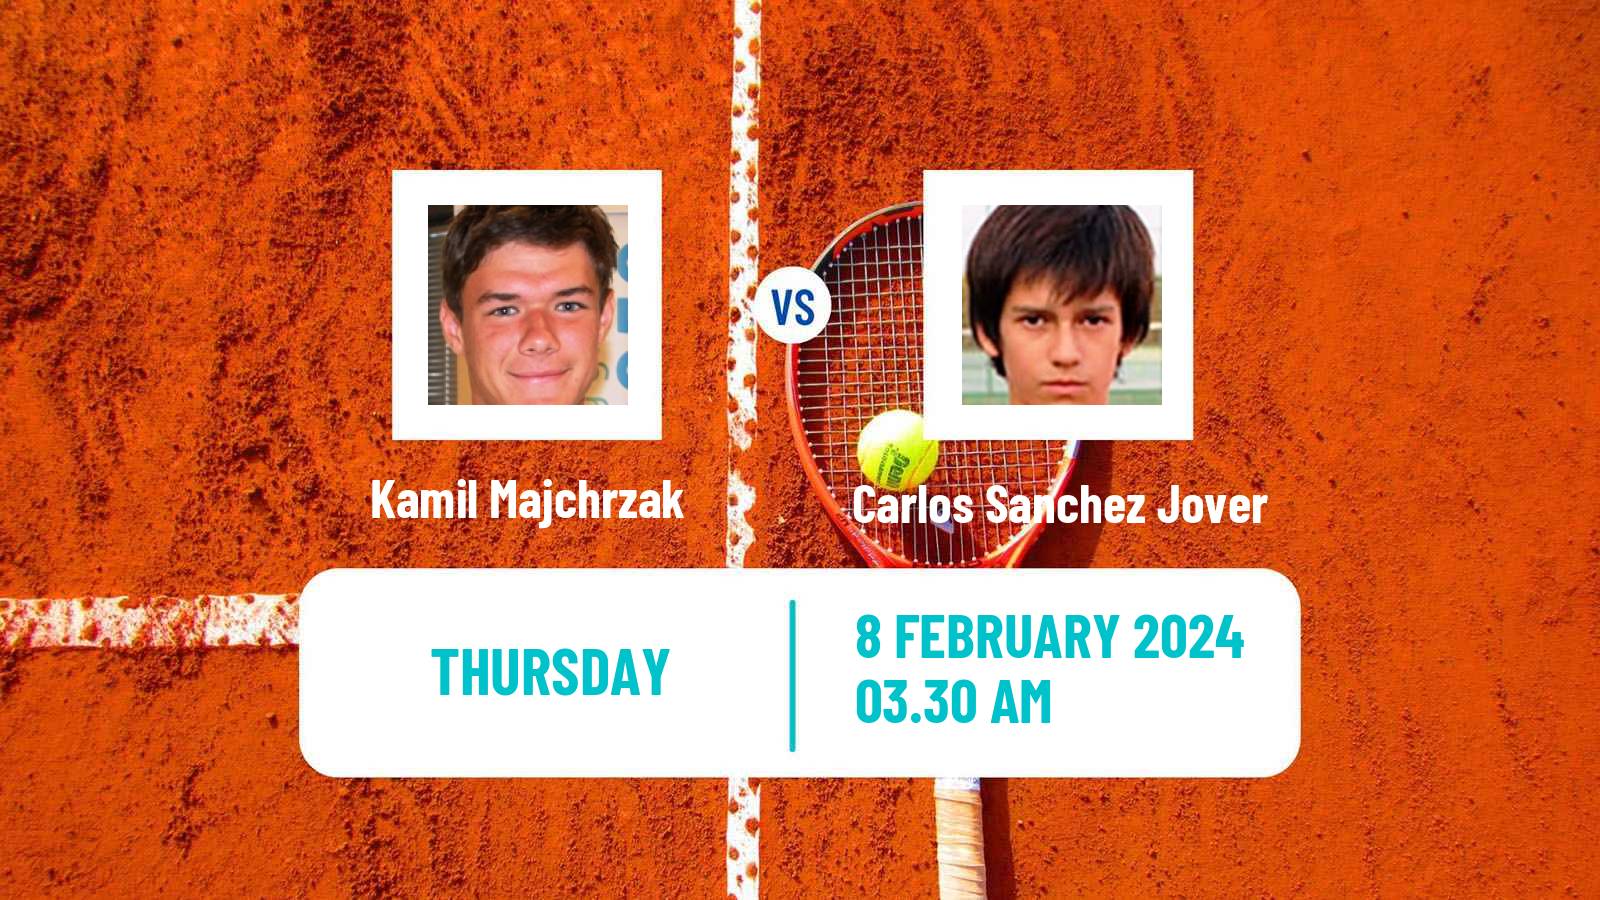 Tennis ITF M25 Hammamet 2 Men Kamil Majchrzak - Carlos Sanchez Jover